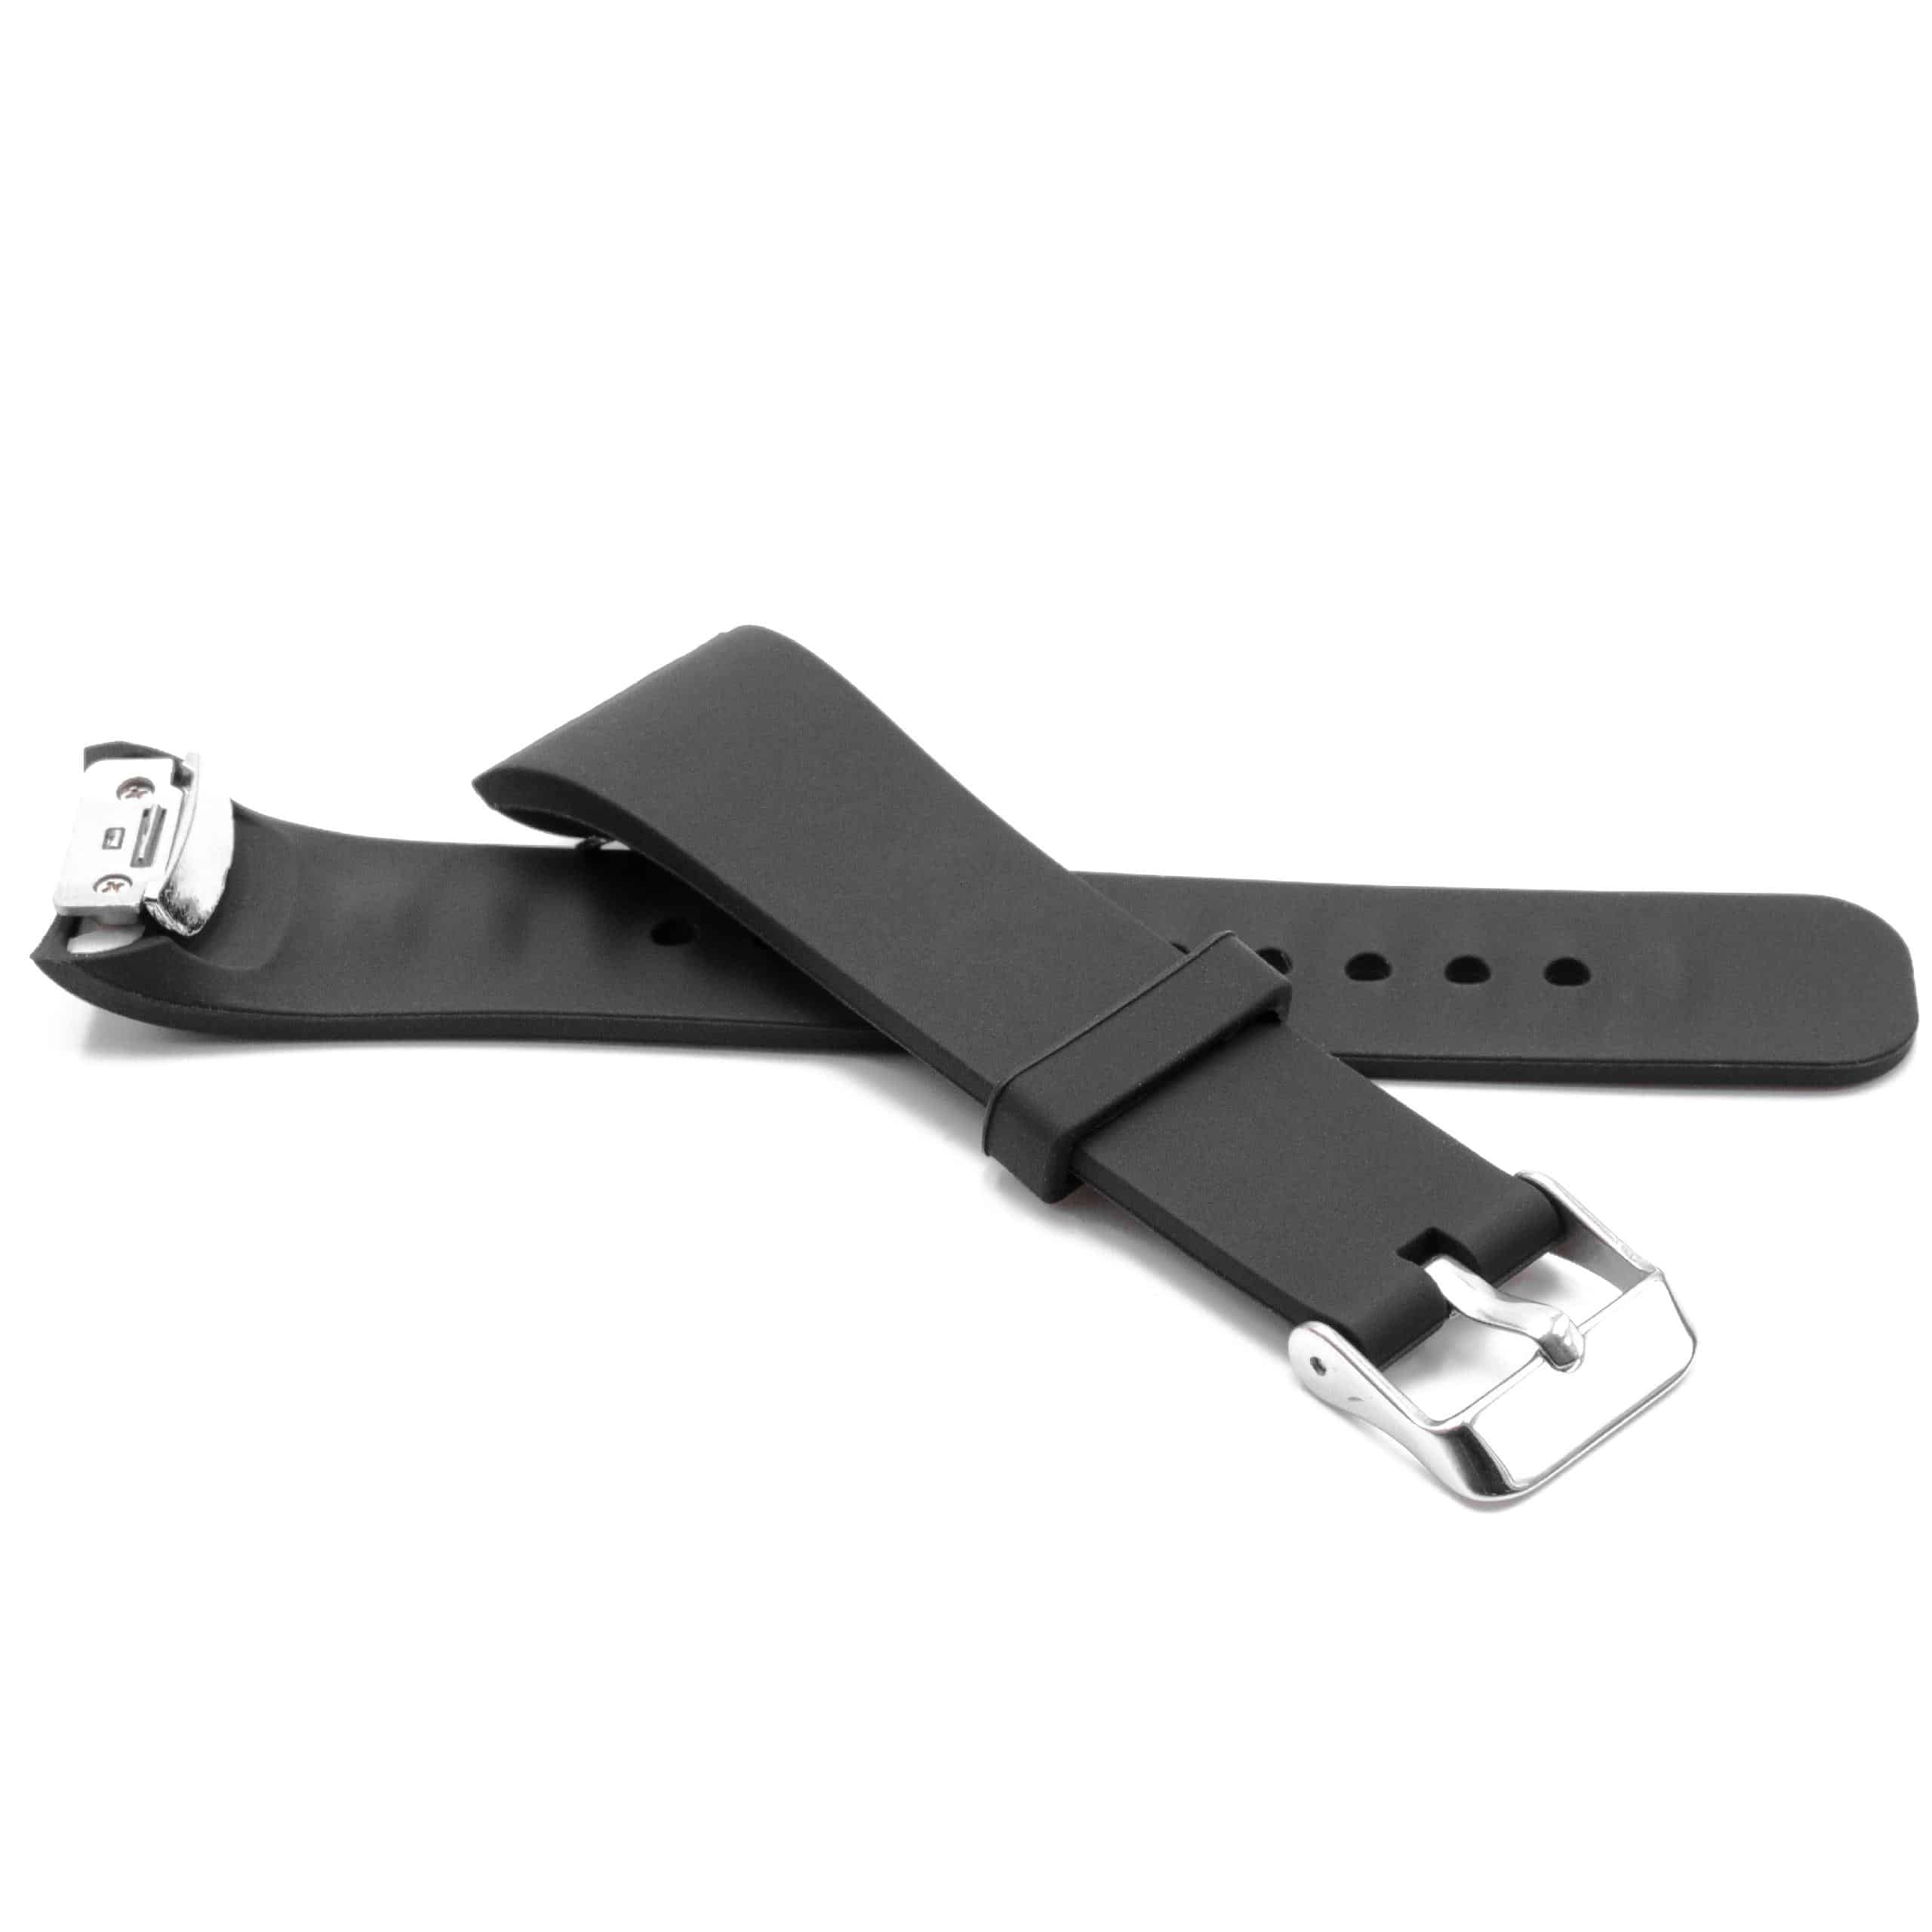 Armband für Samsung Gear Smartwatch - 11,7 + 7,6 cm lang, 18,5mm breit, Silikon, schwarz